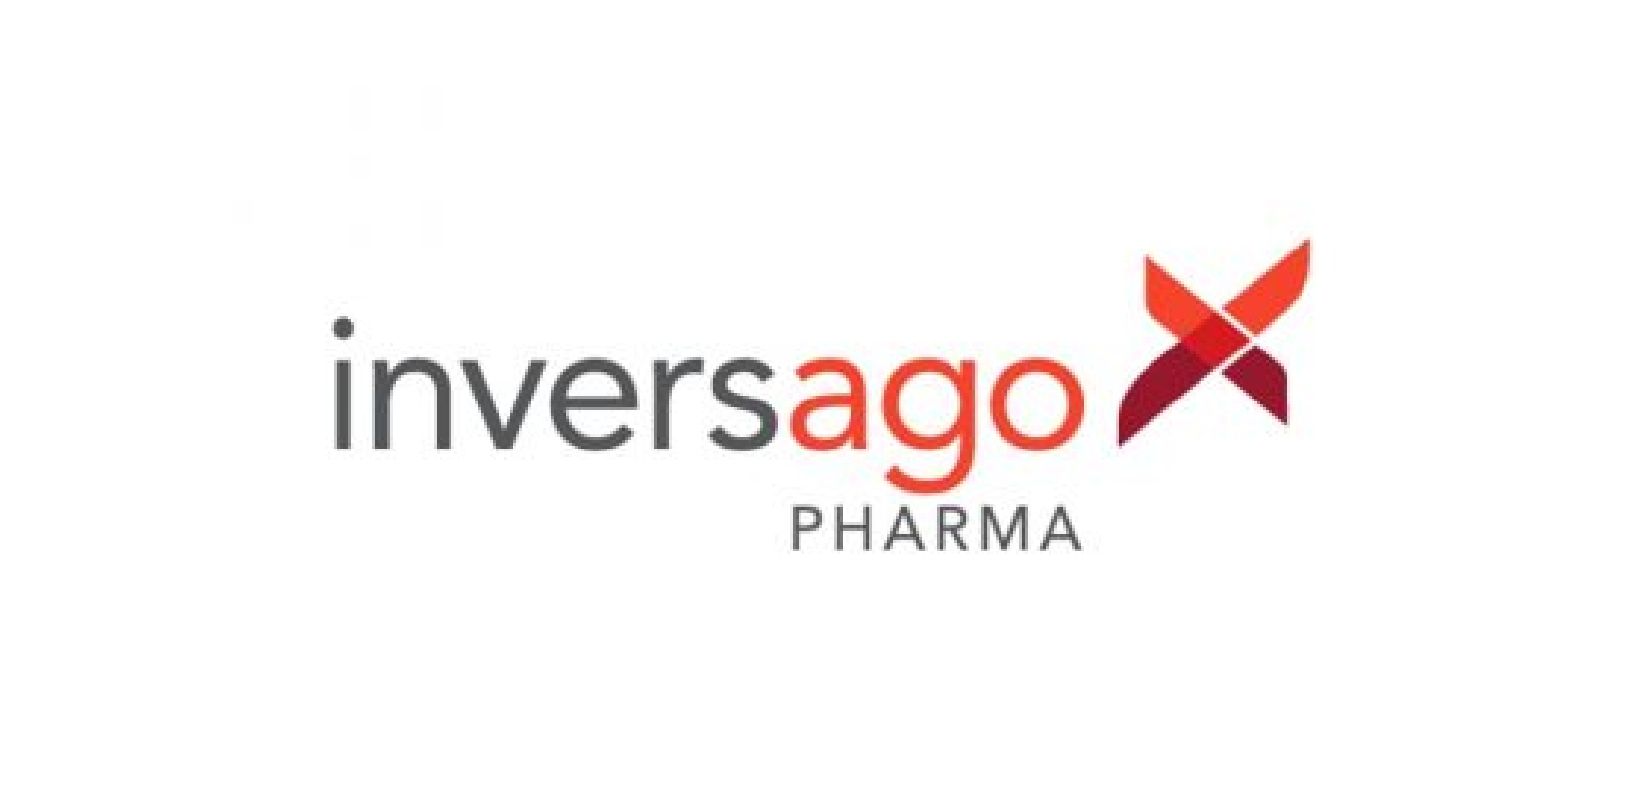 adMare est heureux d’augmenter son investissement dans Inversago Pharma aux côtés d’investisseurs de premier plan en sciences de la vie et ainsi de participer au développement de cette entreprise canadienne unique qui développe des thérapies innovantes